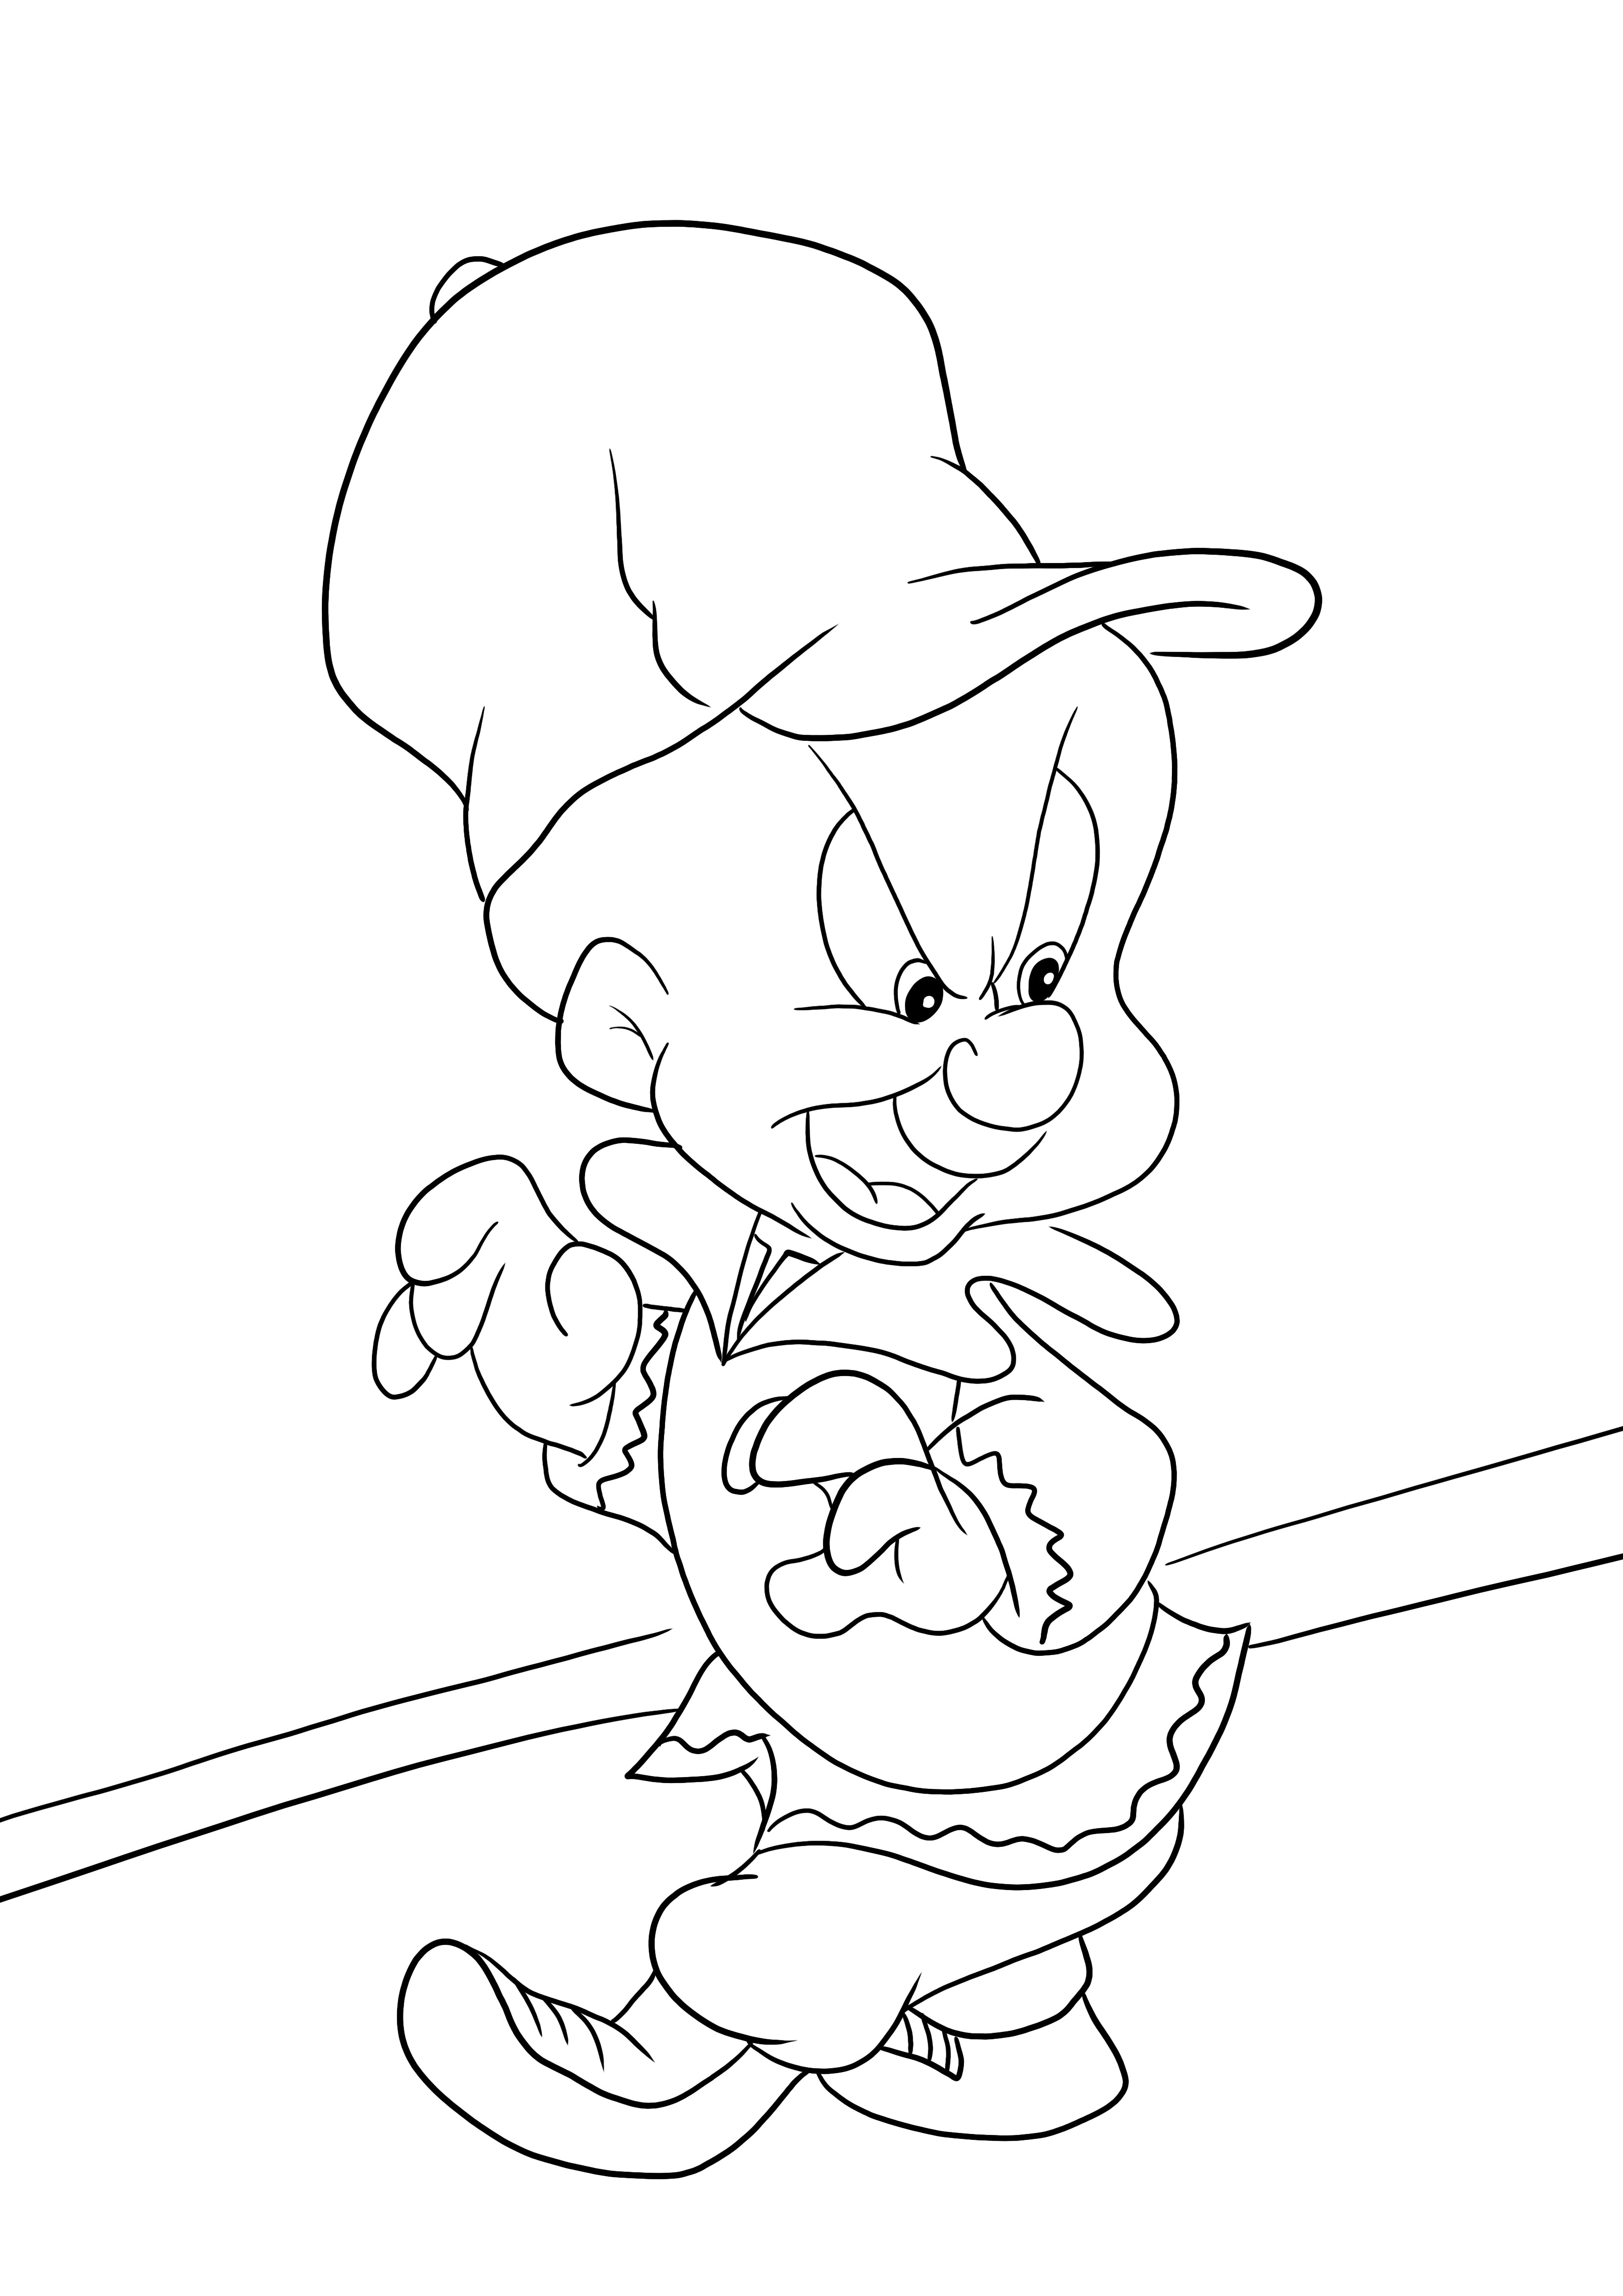 Elmer Fudd dari Looney Tunes-halaman yang dapat diunduh dan diwarnai gratis